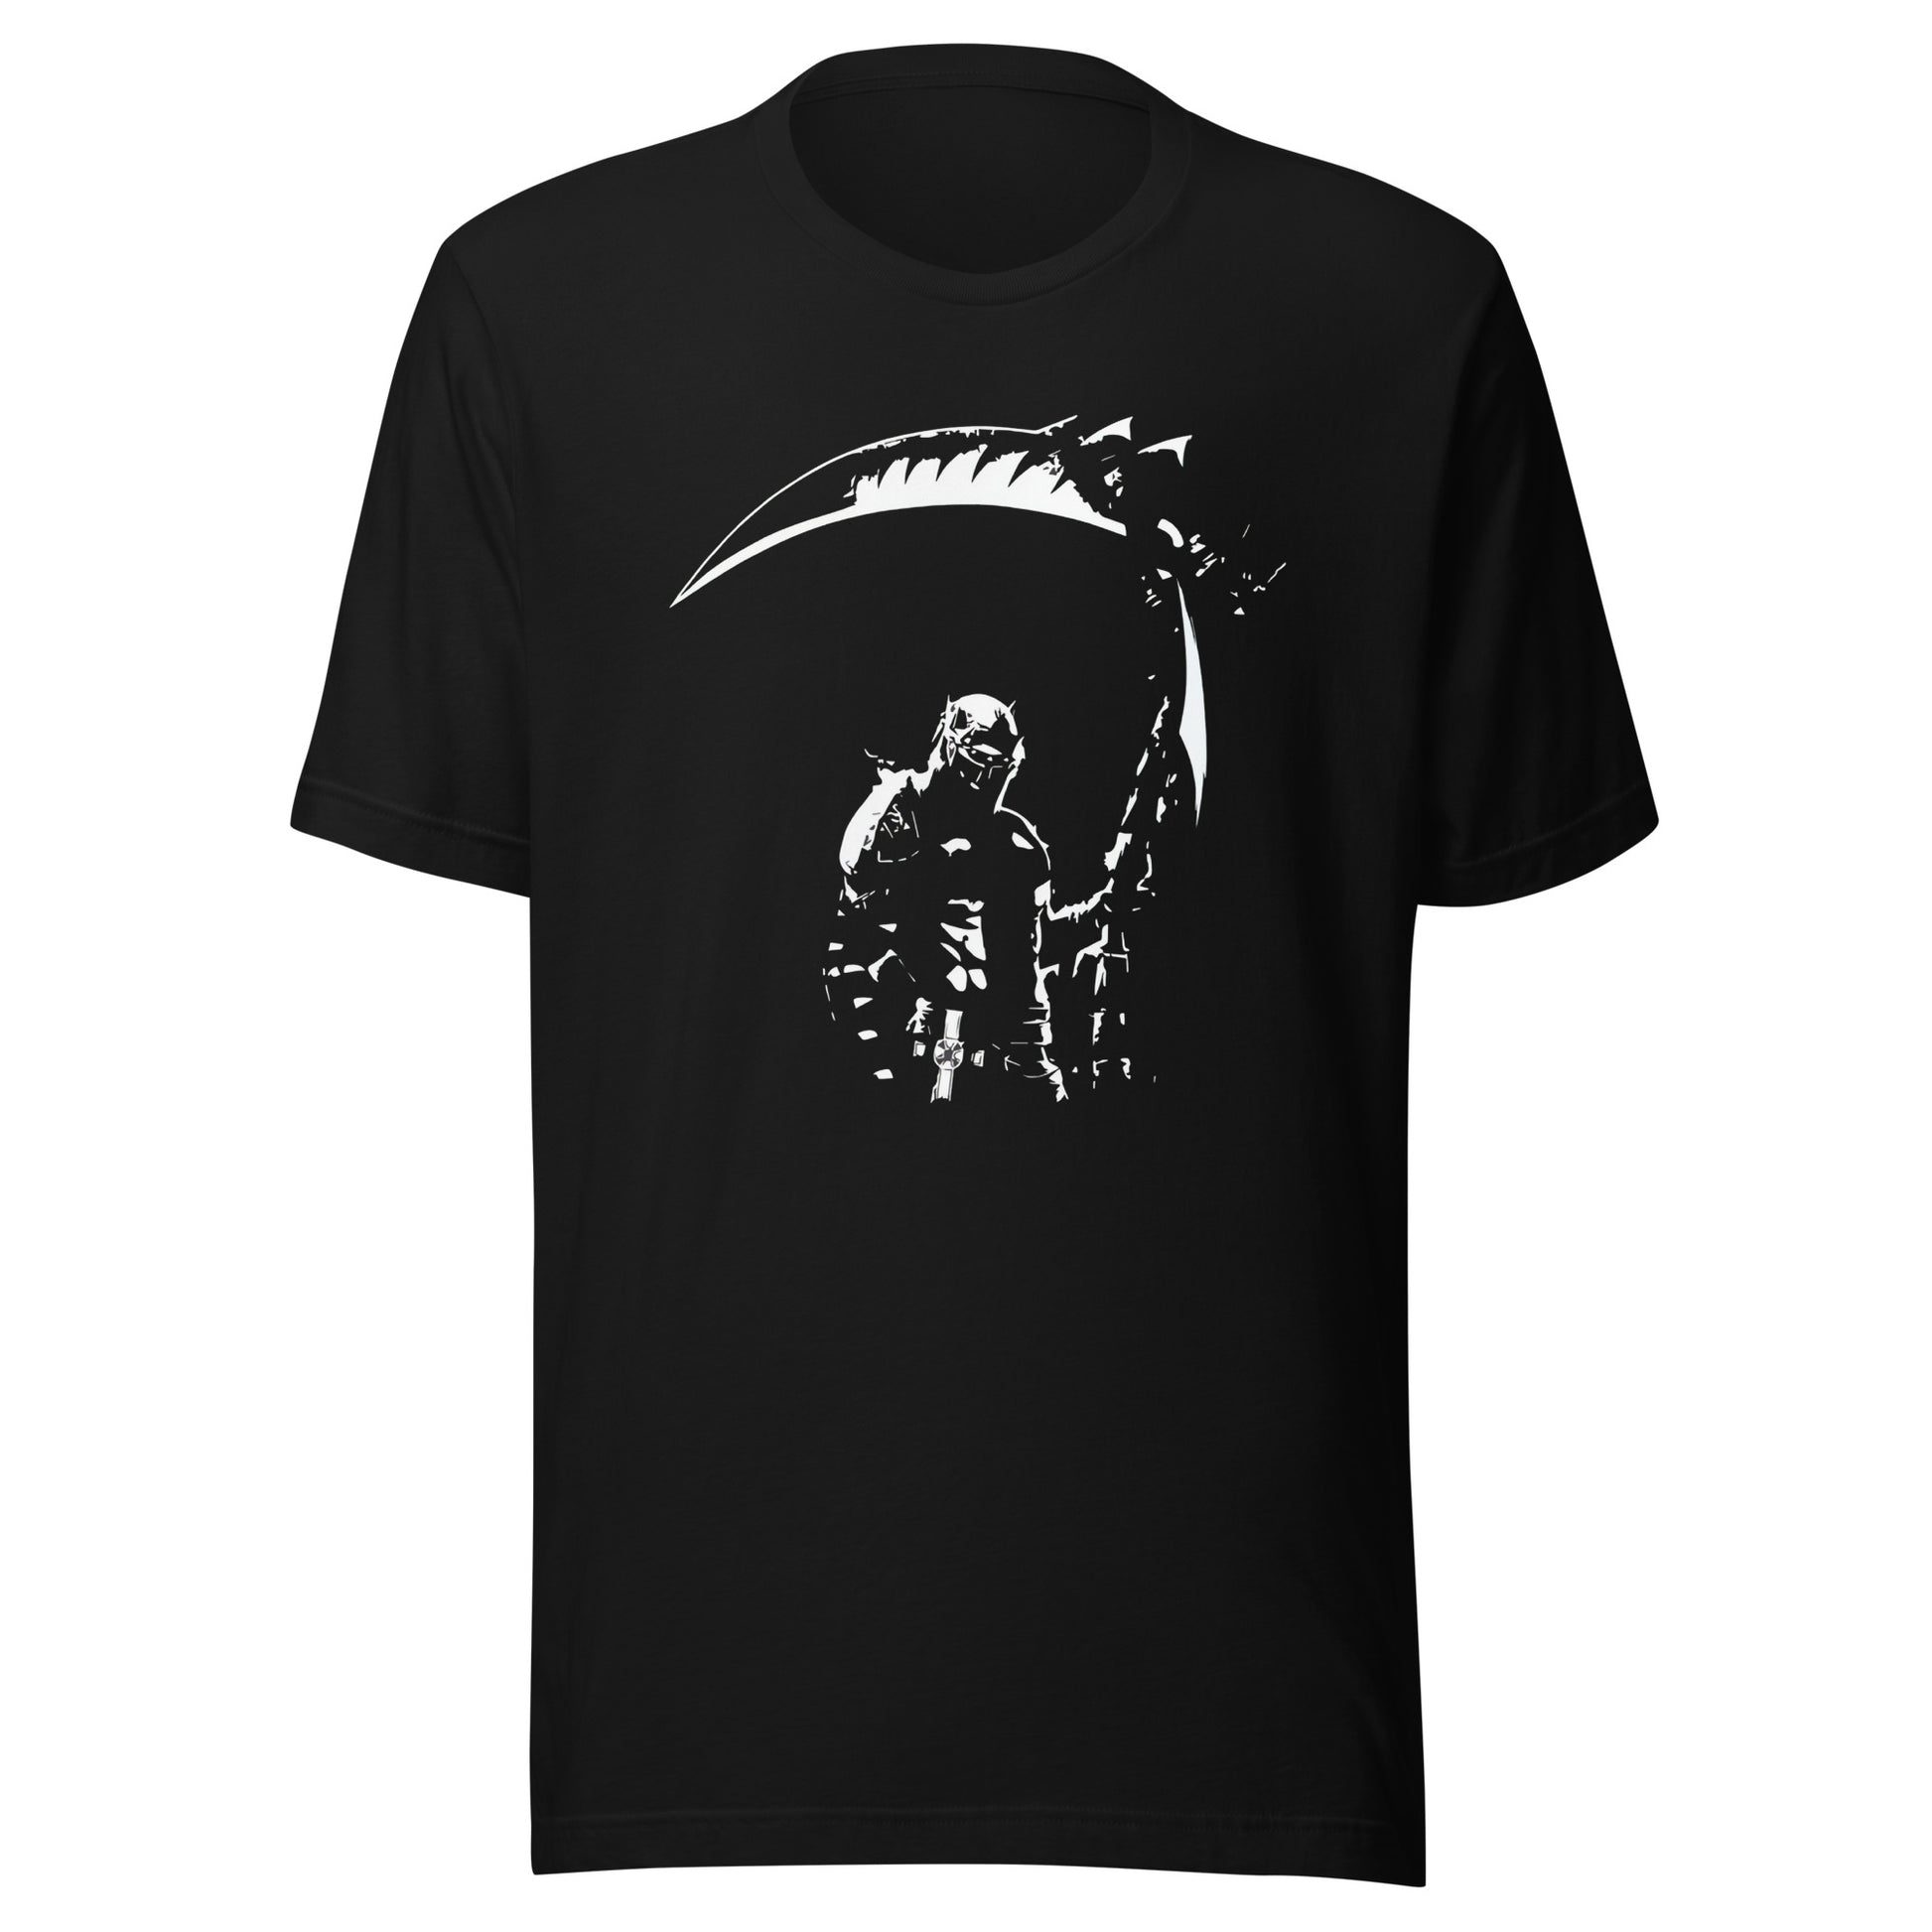 ¡Compra el mejor merchandising en Superstar! Encuentra diseños únicos y de alta calidad en camisetas únicas, Camiseta Dante's Inferno